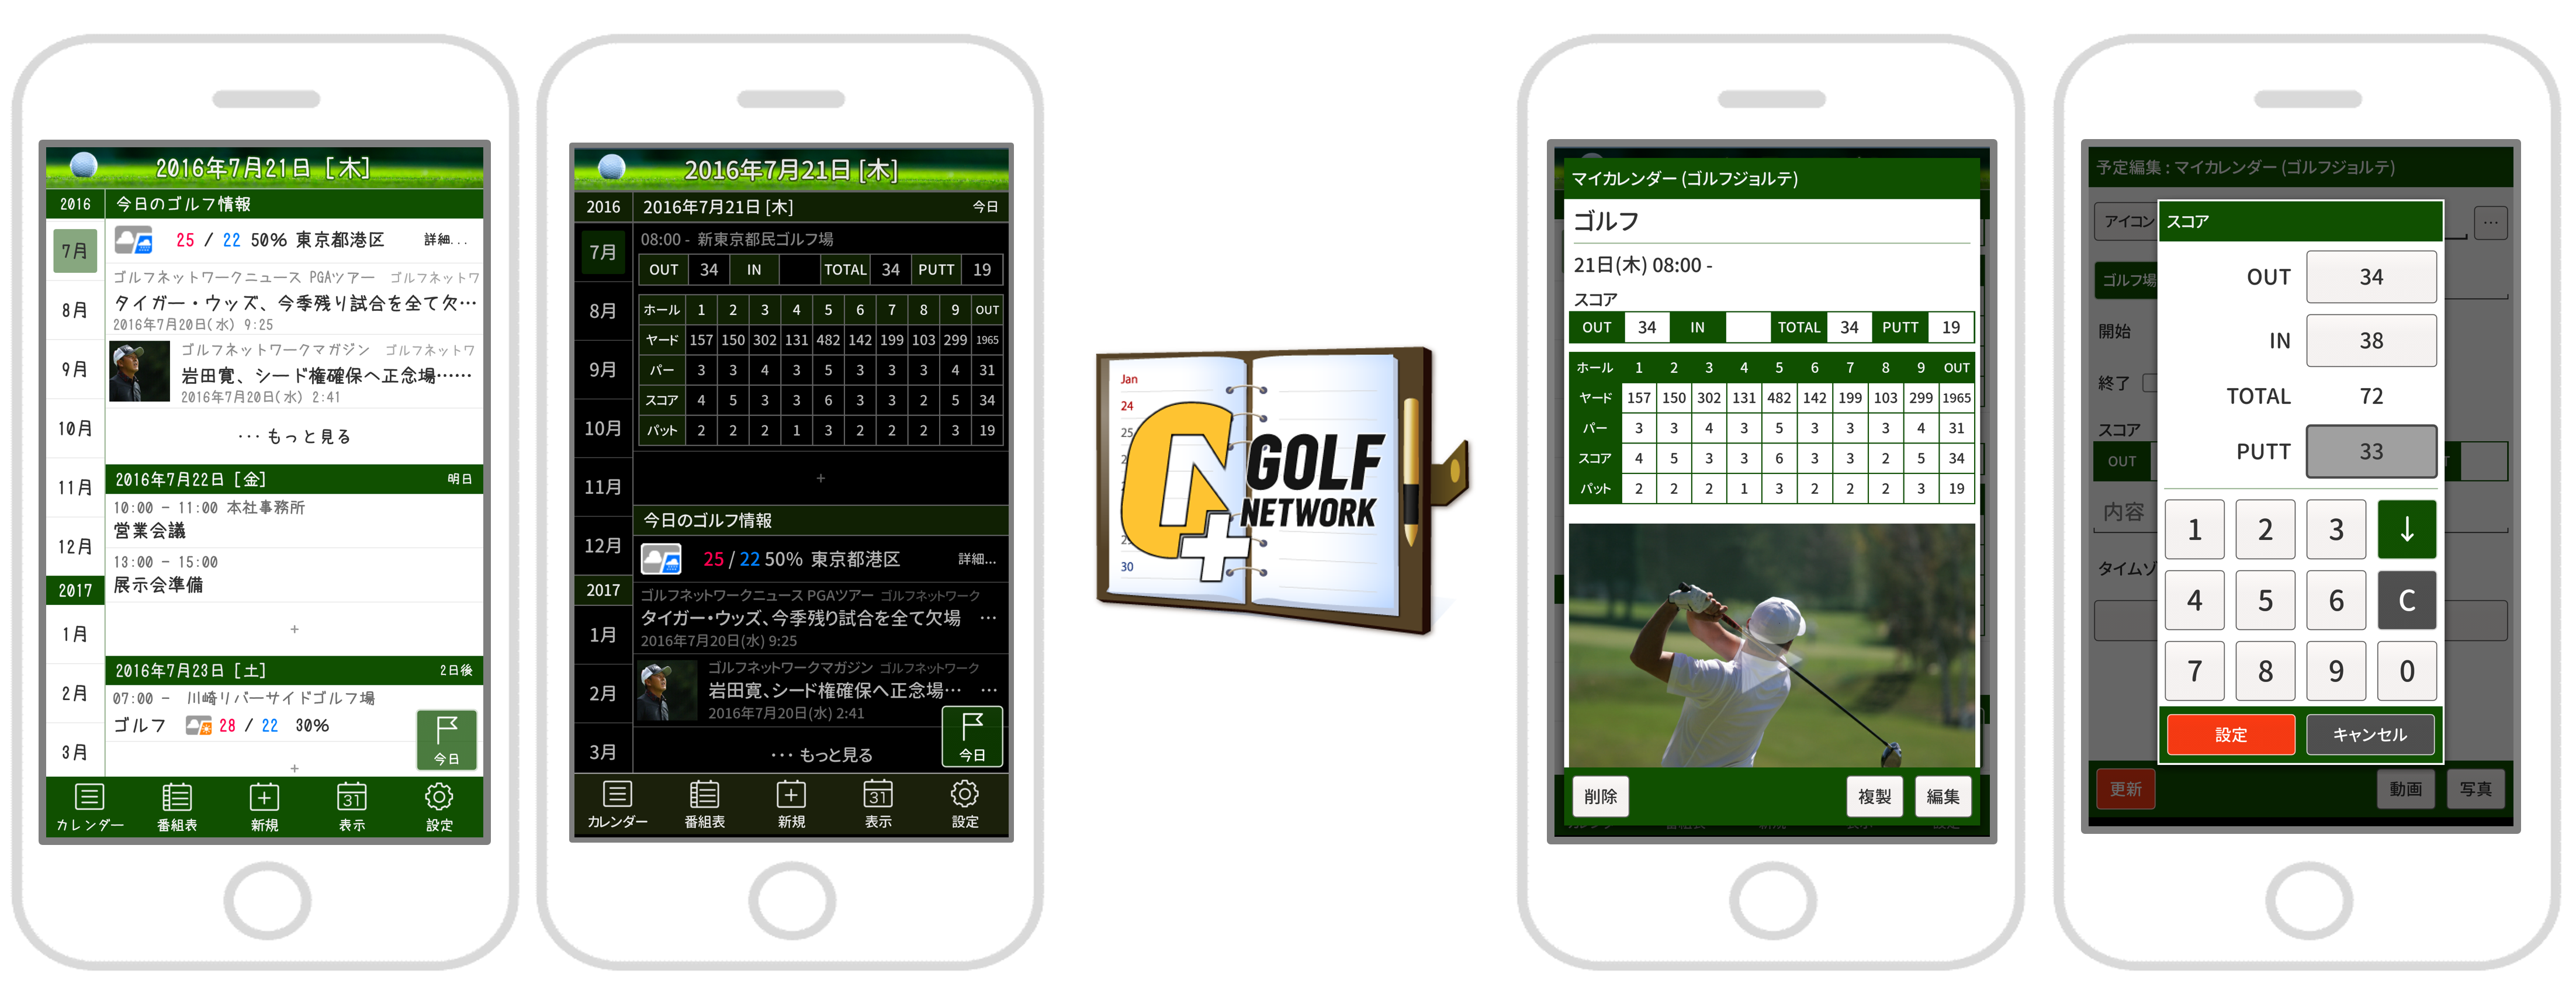 スコアもスケジュール管理もこれひとつ ジョルテ ゴルフネットワークが放つ ゴルファーのための無料カレンダーアプリ ゴルフ ネットワークプラスジョルテ 提供開始 株式会社ジョルテのプレスリリース